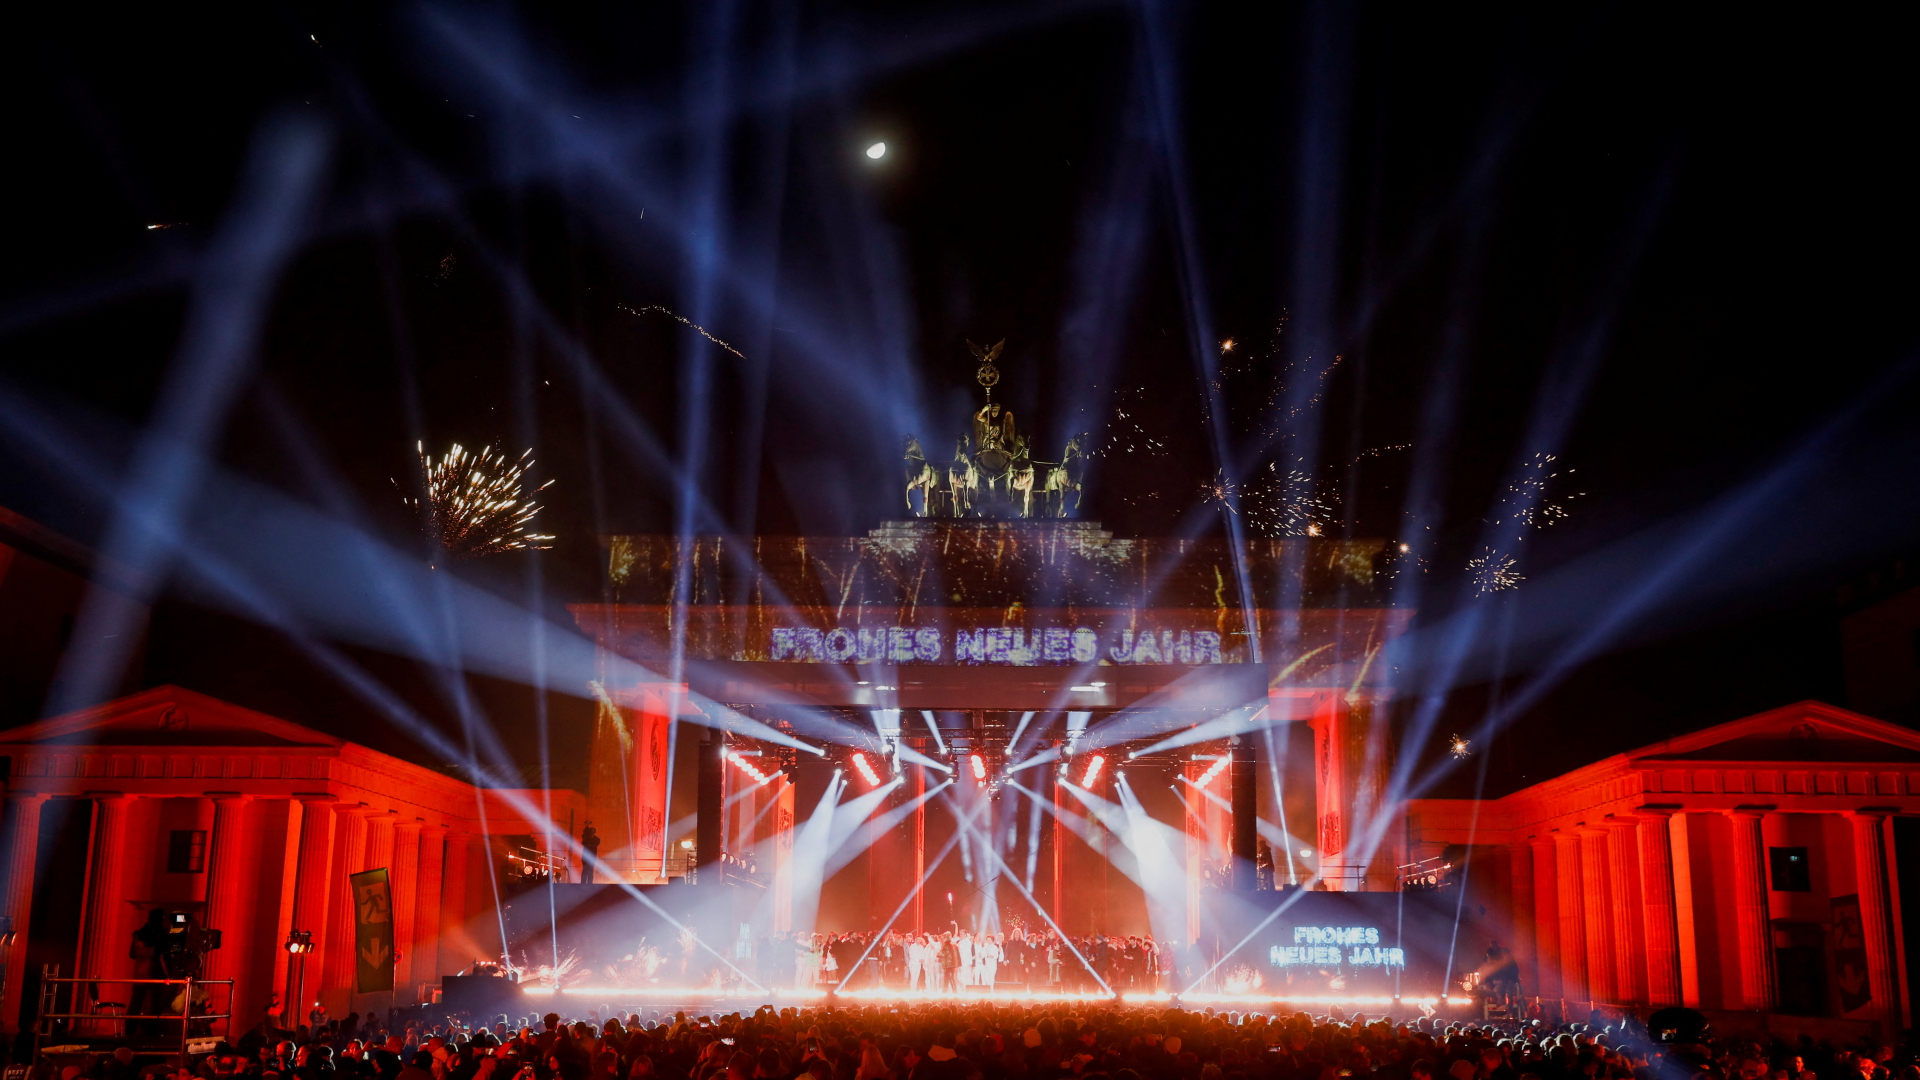 Silvesterfeiern und Lightshow an Brandenburger Tor in Berlin | REUTERS